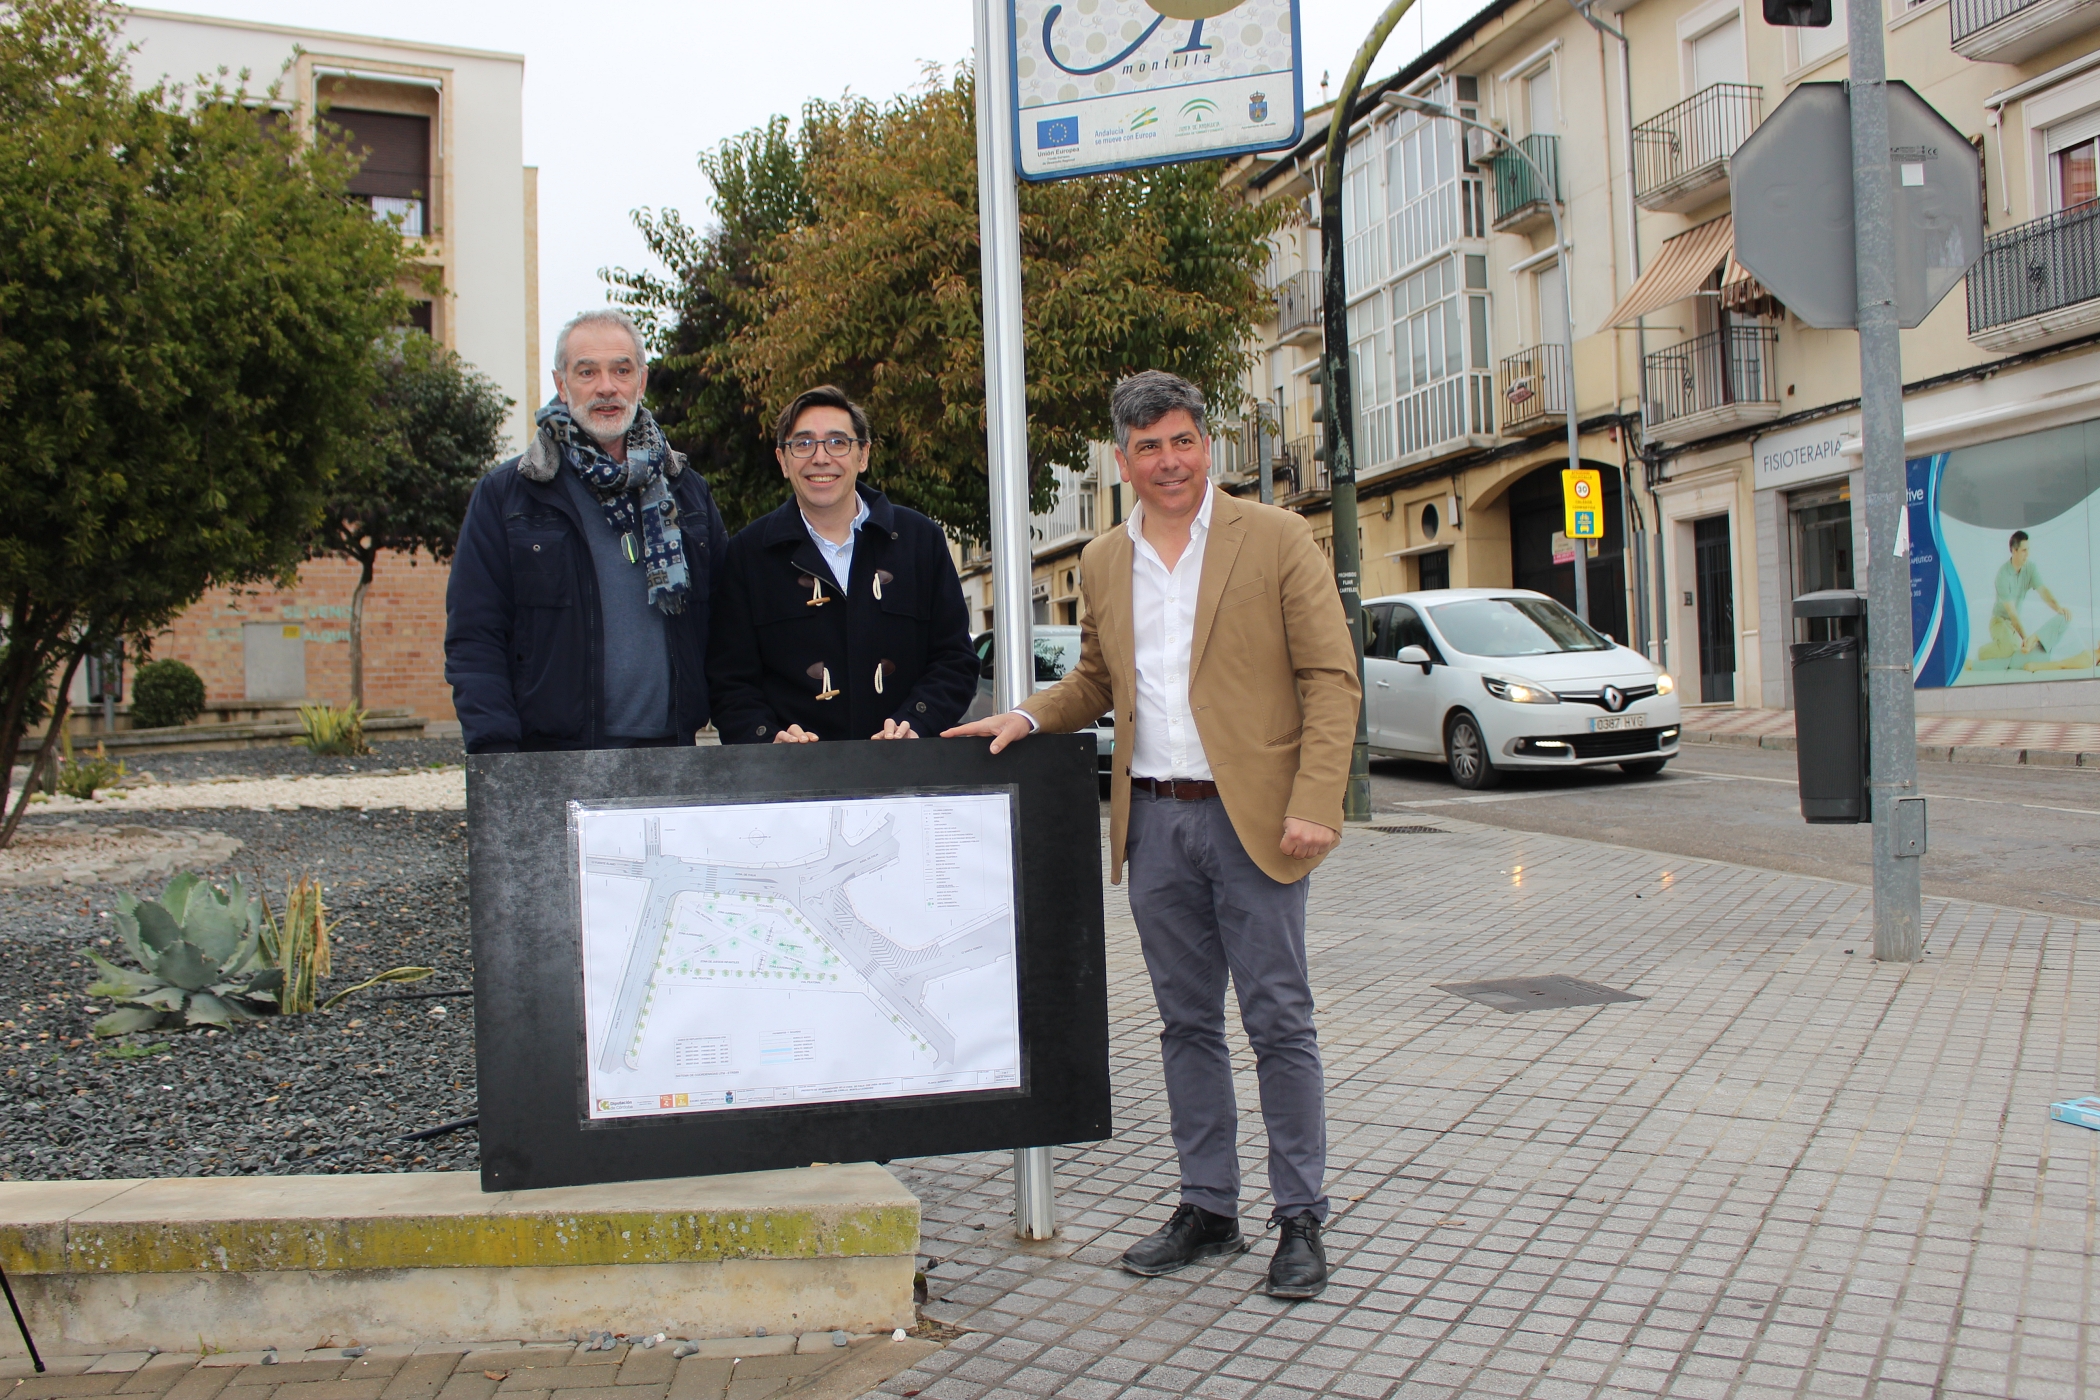 Se elimina el último semáforo del casco urbano para mejorar la movilidad y se ensanchan los carriles en Avenidas de Boucau e Italia.